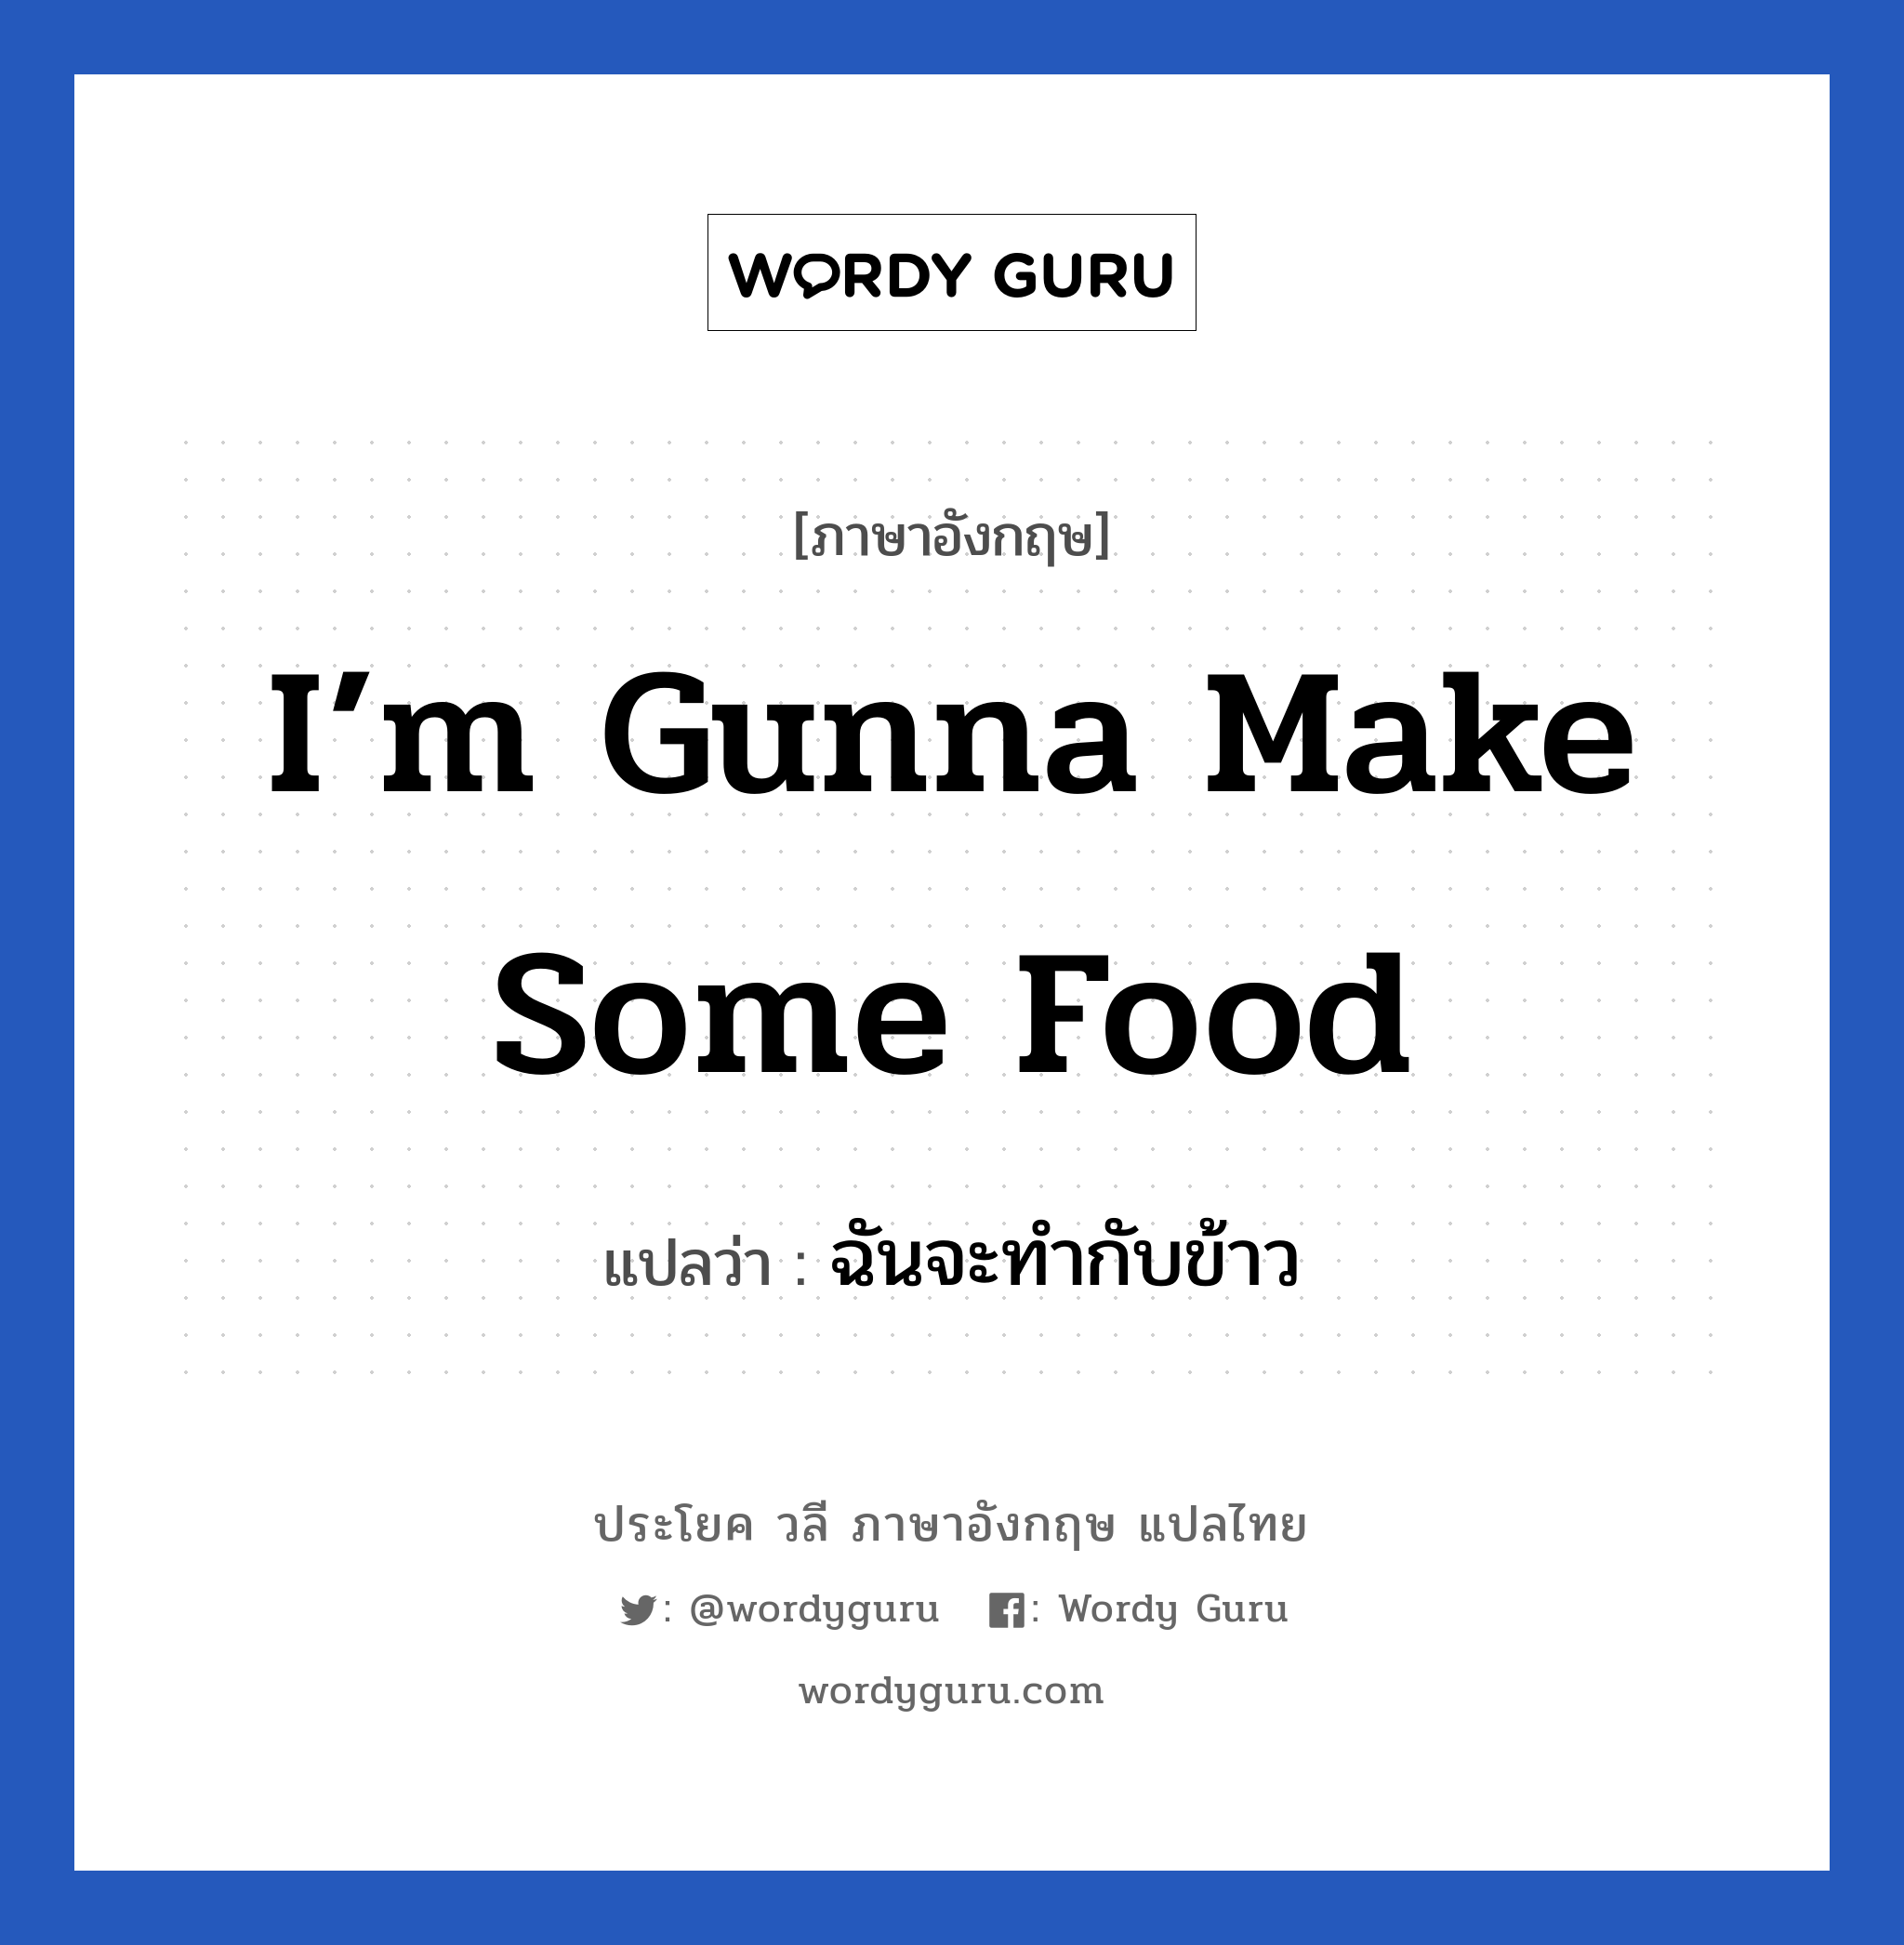 I’m gunna make some food แปลว่า?, วลีภาษาอังกฤษ I’m gunna make some food แปลว่า ฉันจะทำกับข้าว